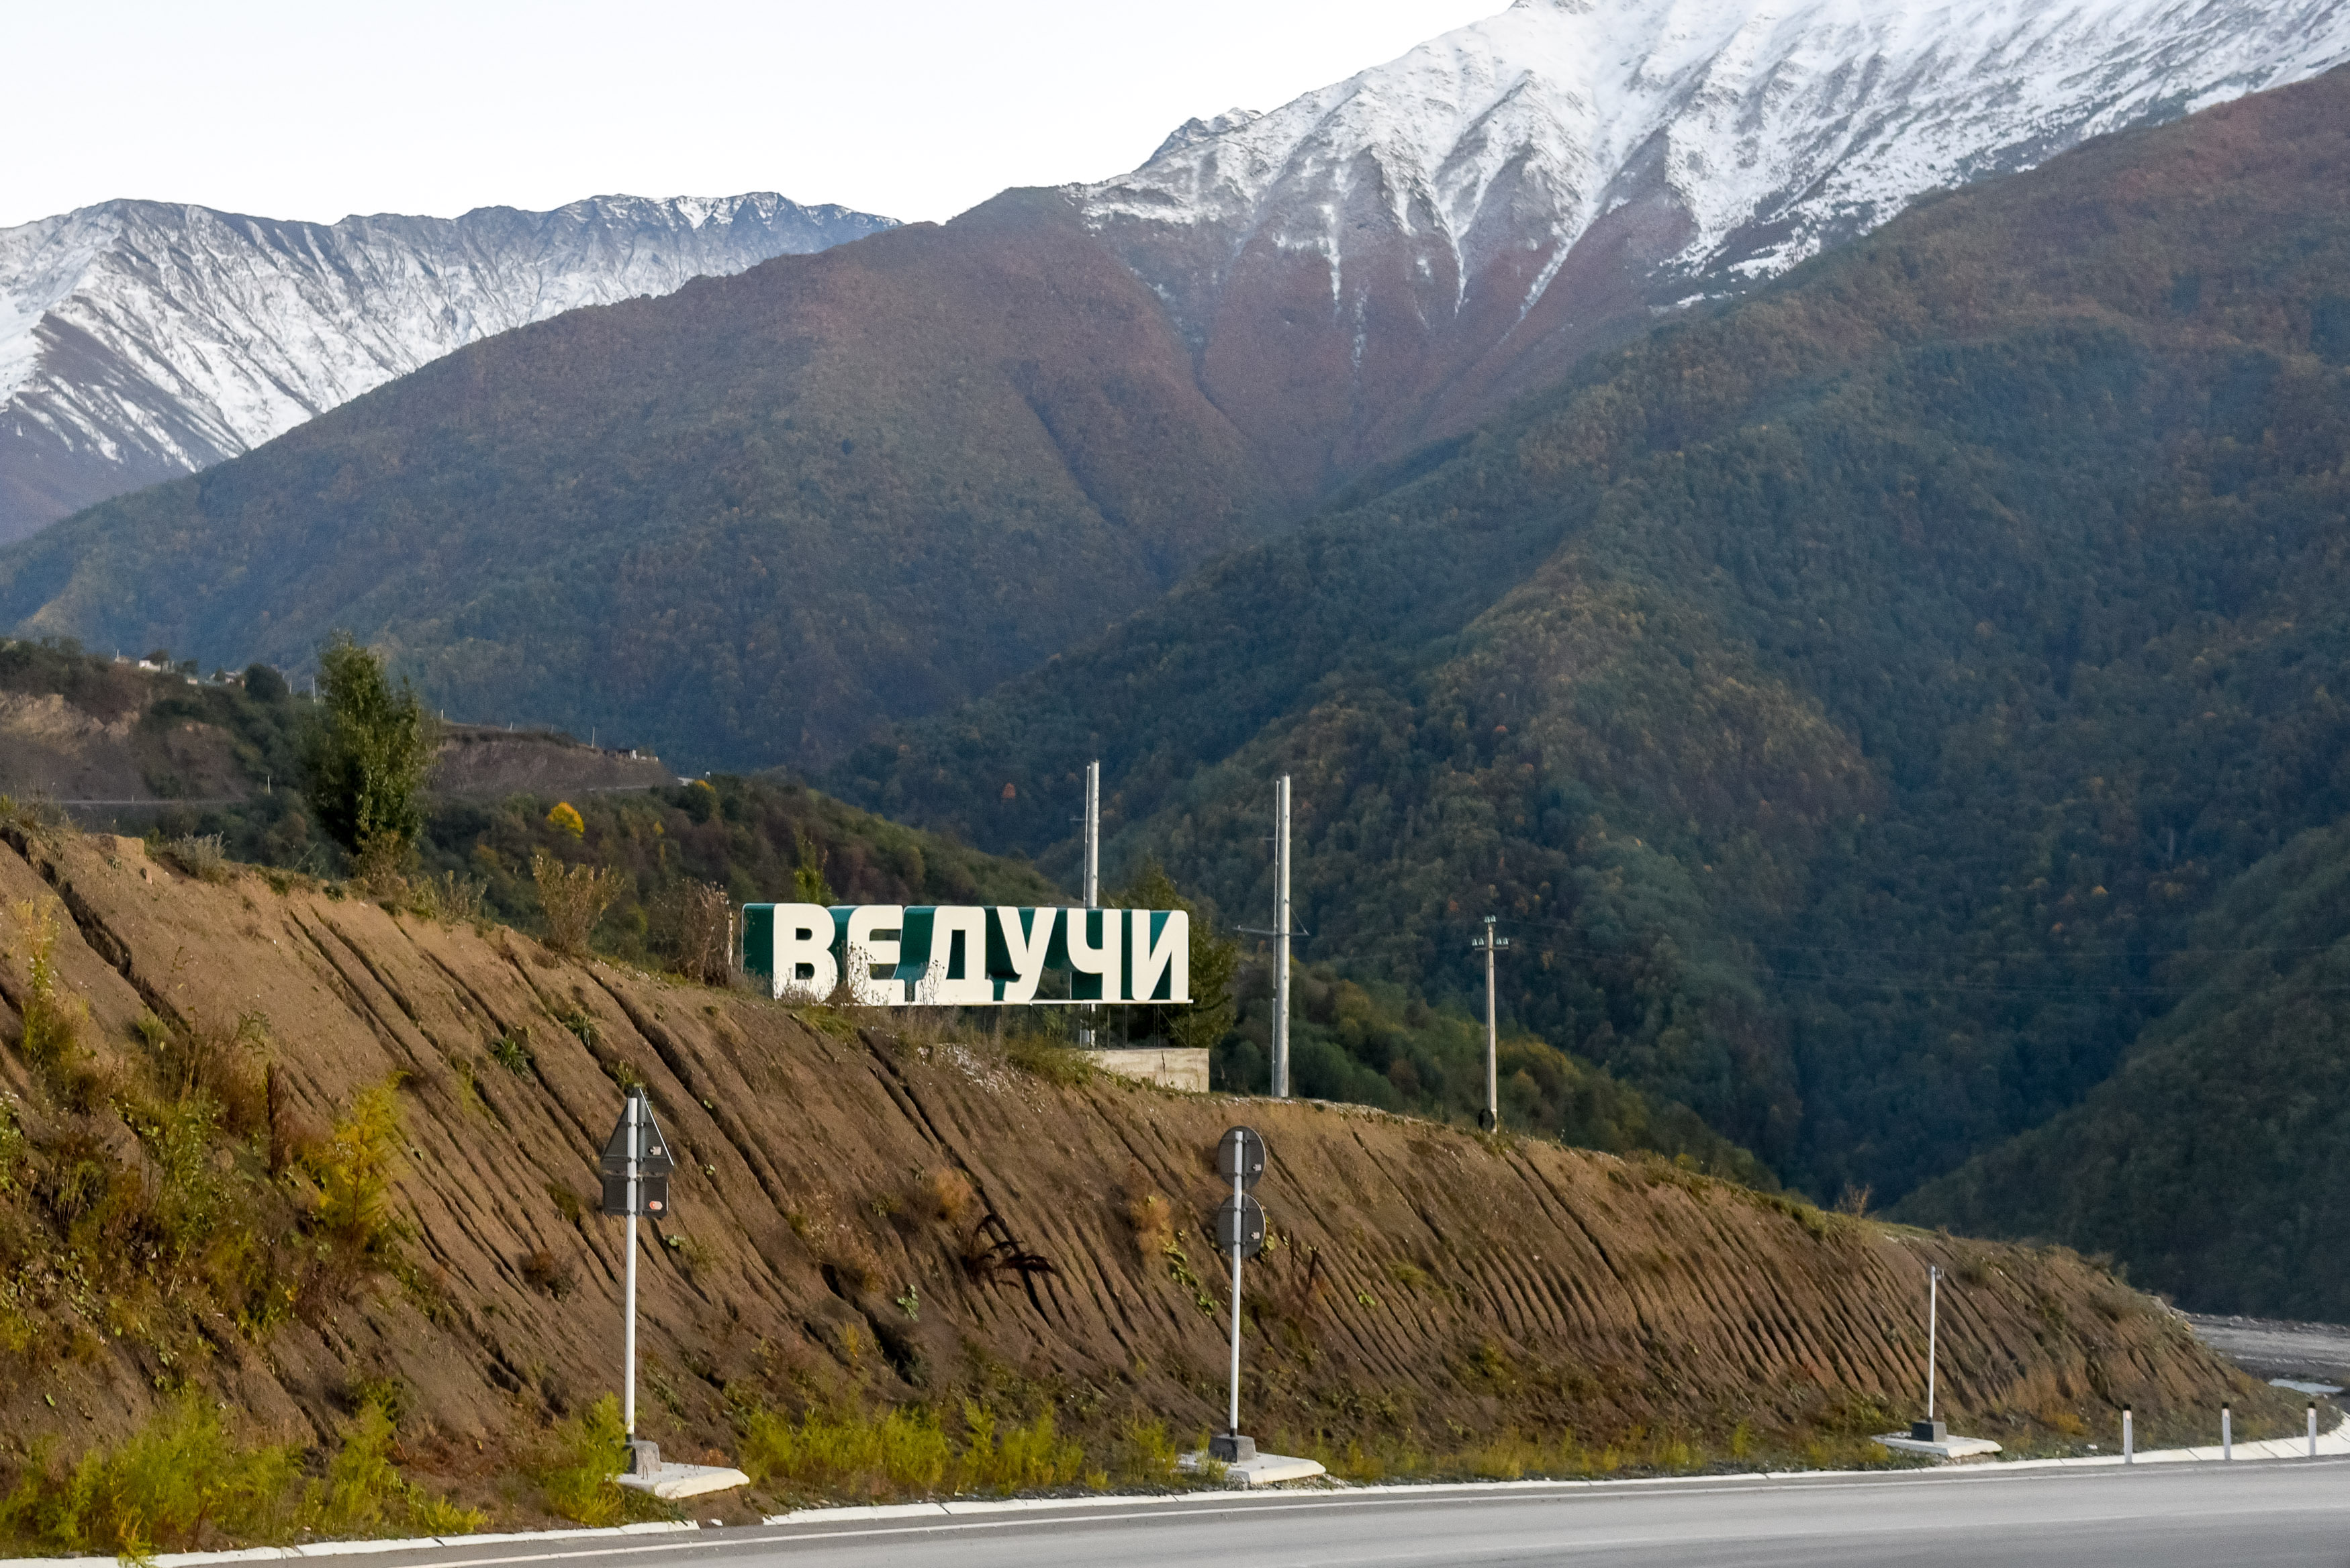 ТАСС: Три курорта возобновили работу в Чечне после снятия ограничений